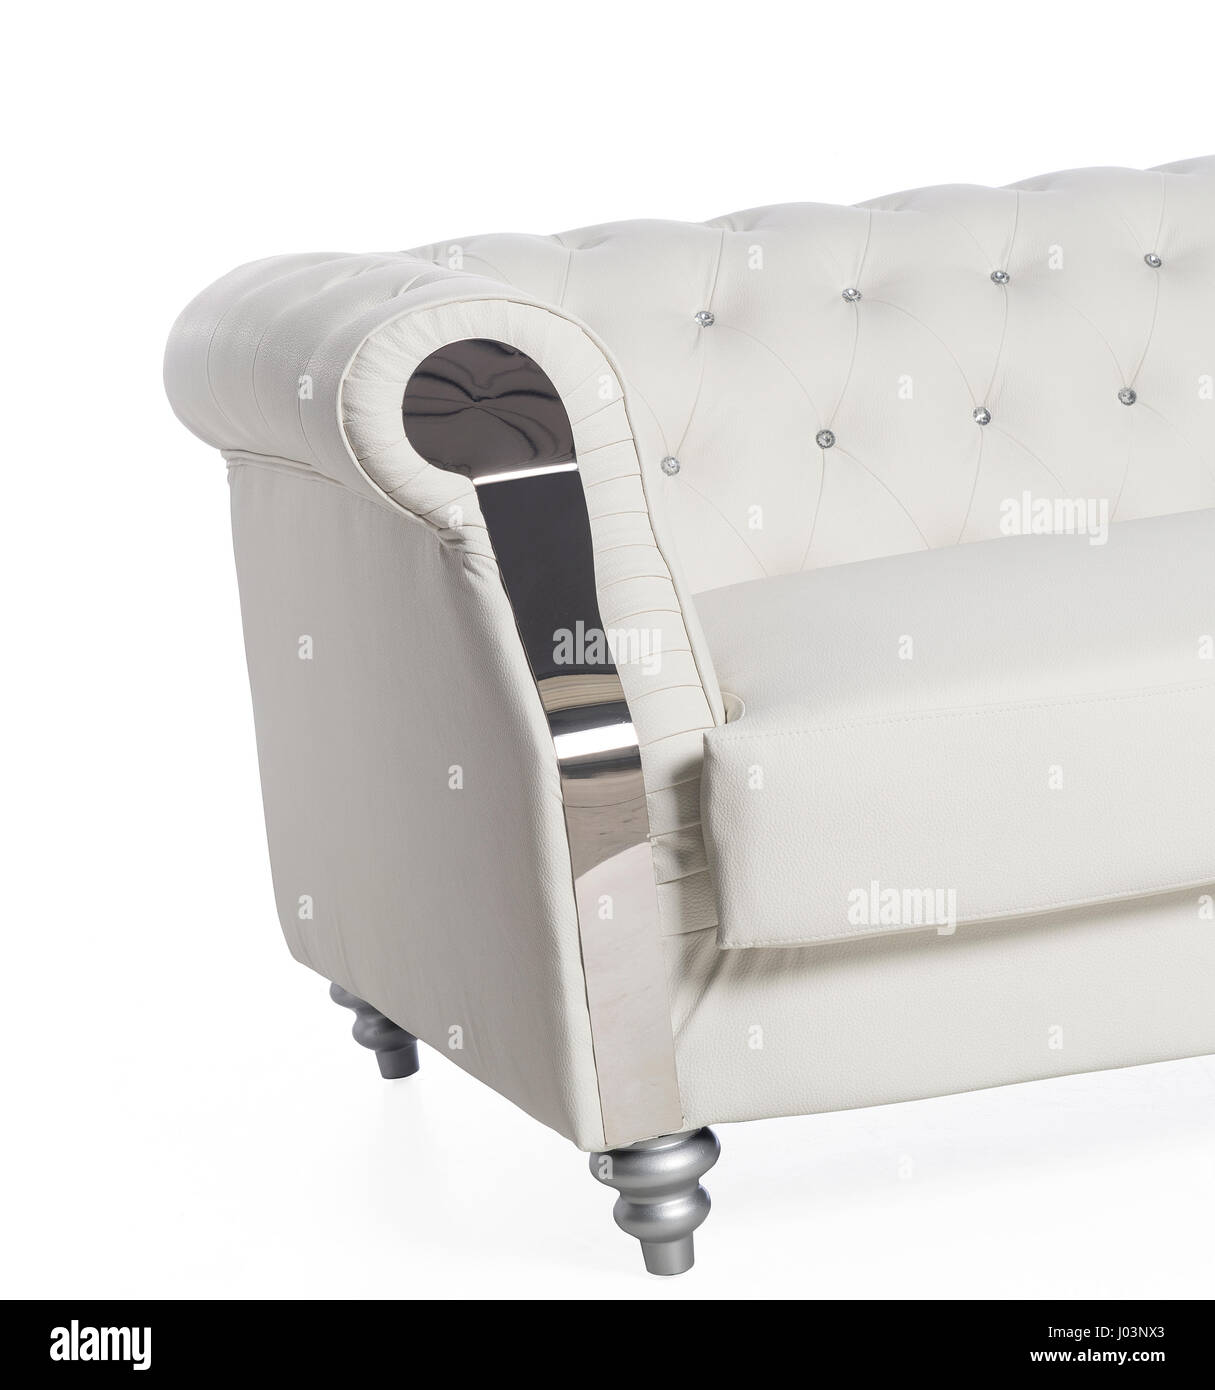 Il lusso mobili imbottiti, confortevole, elegante, colori attraenti, isolato su sfondo bianco Foto Stock